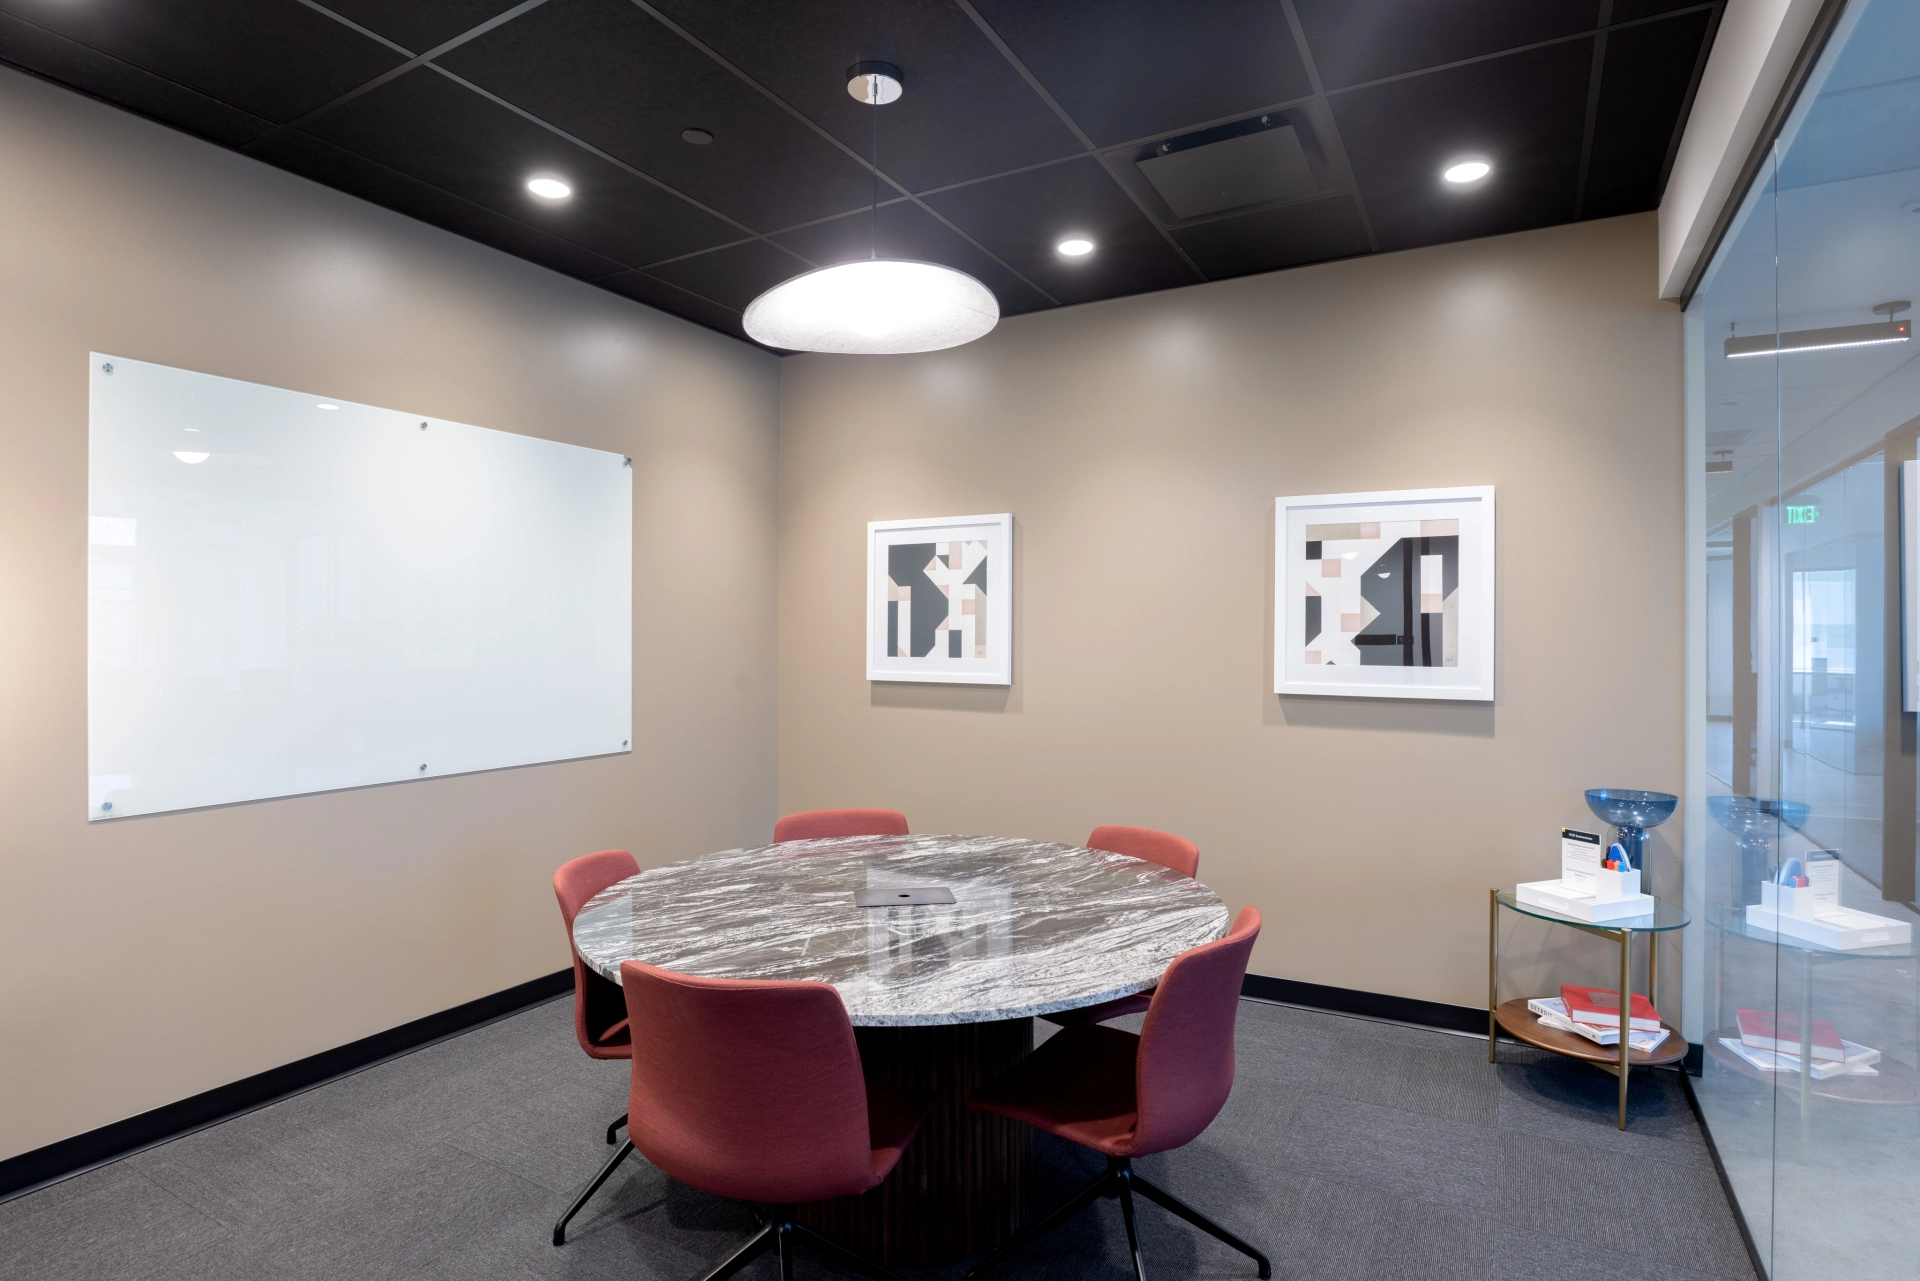 Une salle de réunion avec une table ronde pour un espace de travail collaboratif dans un bureau.